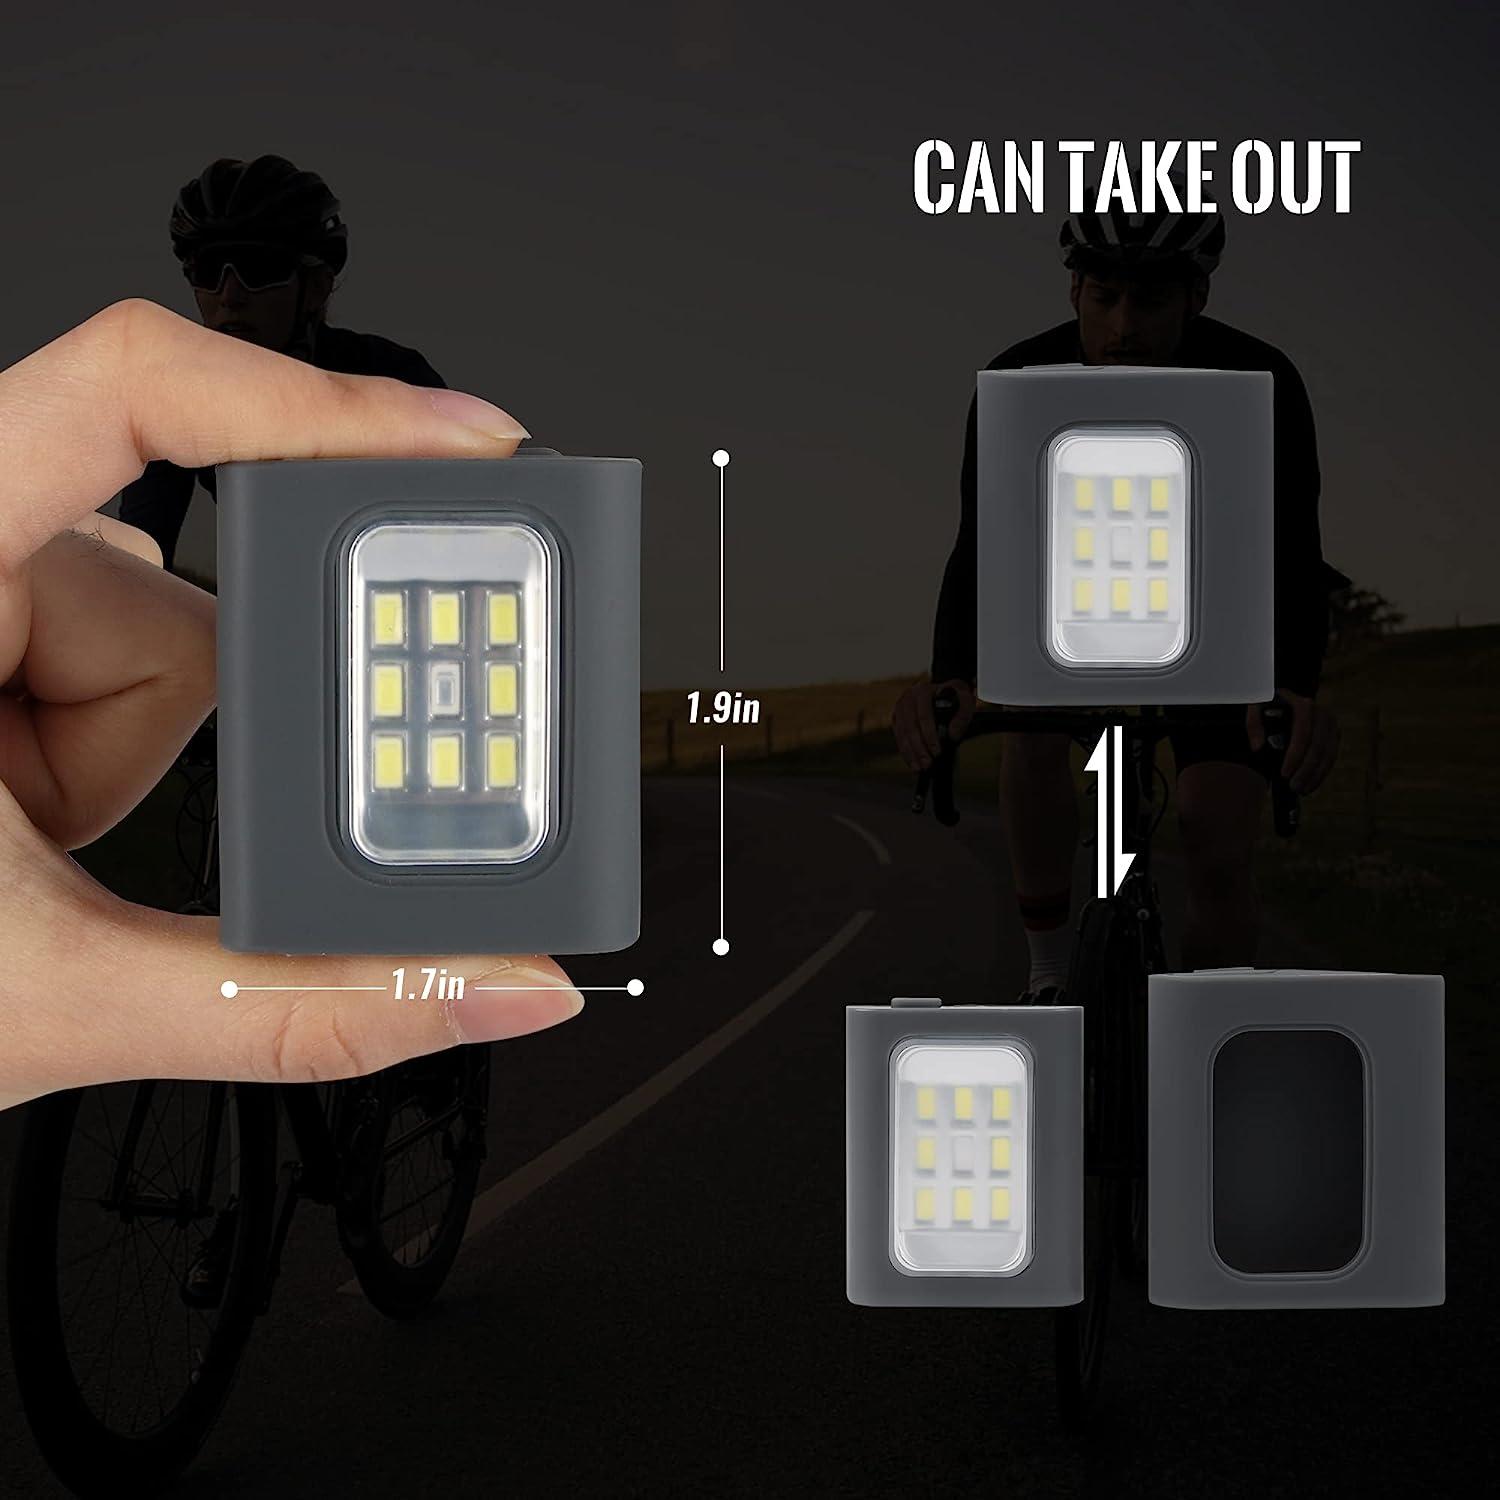  Outdoor Night Clip on Running Lights Reflective USB